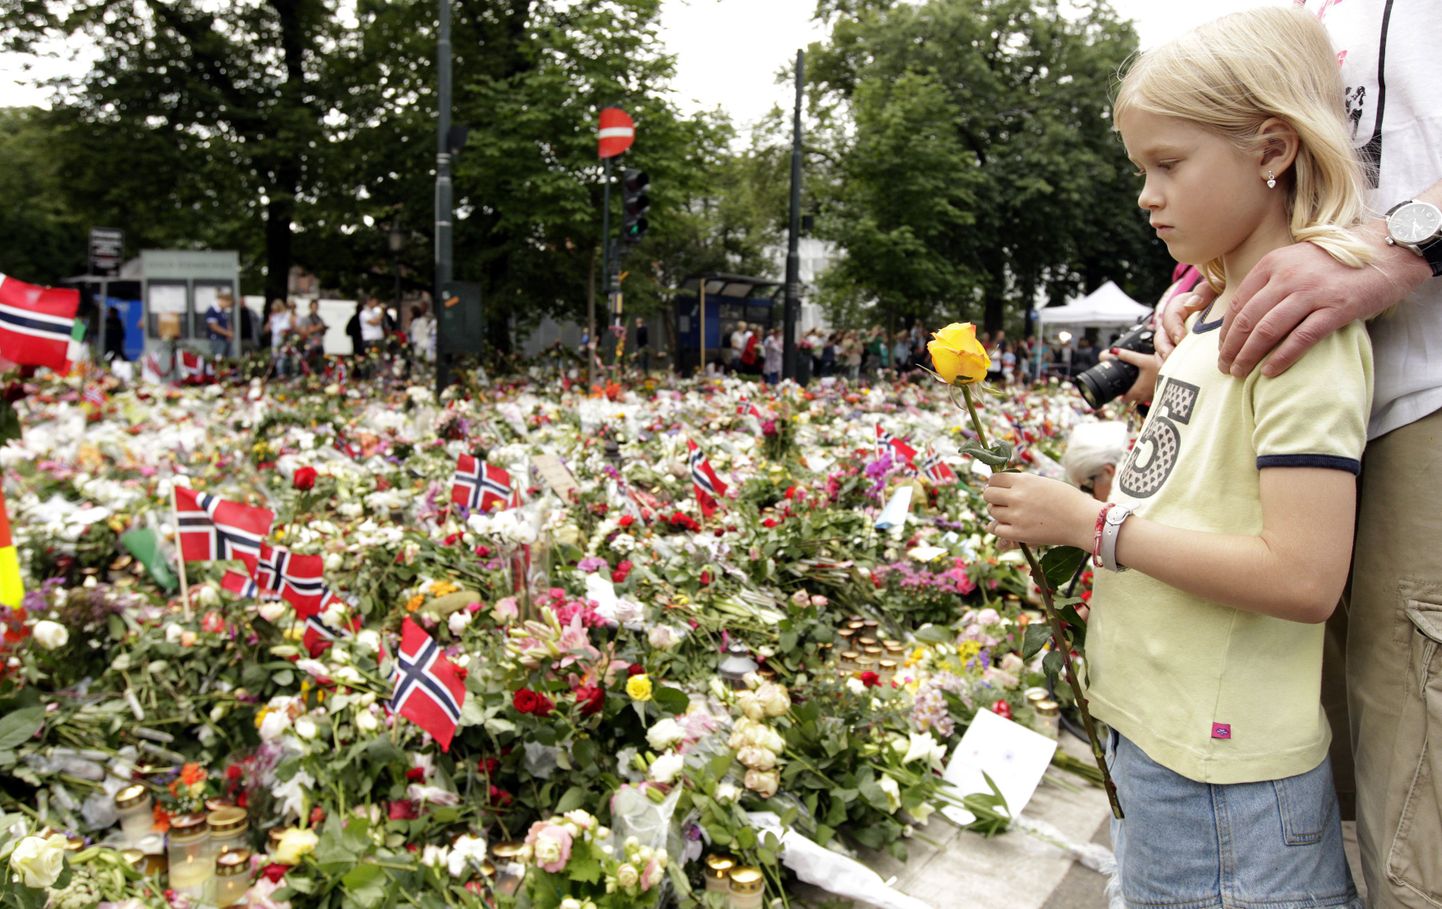 Alates esmaspäevast on norralased kogunenud Oslo tänavatele ja Utoya saare lähedusse, et kahes rünnakus hukkunuid mälestada. Leina sümboliks on saanud roosid, mida sajad tuhanded inimesed Oslo katedraali juurde ja plahvatuse asukohta viisid. Lisaks roosidega korraldatud rongkäigule jätkasid norralased kaks õhtut järjest tõrvikutega marssi.